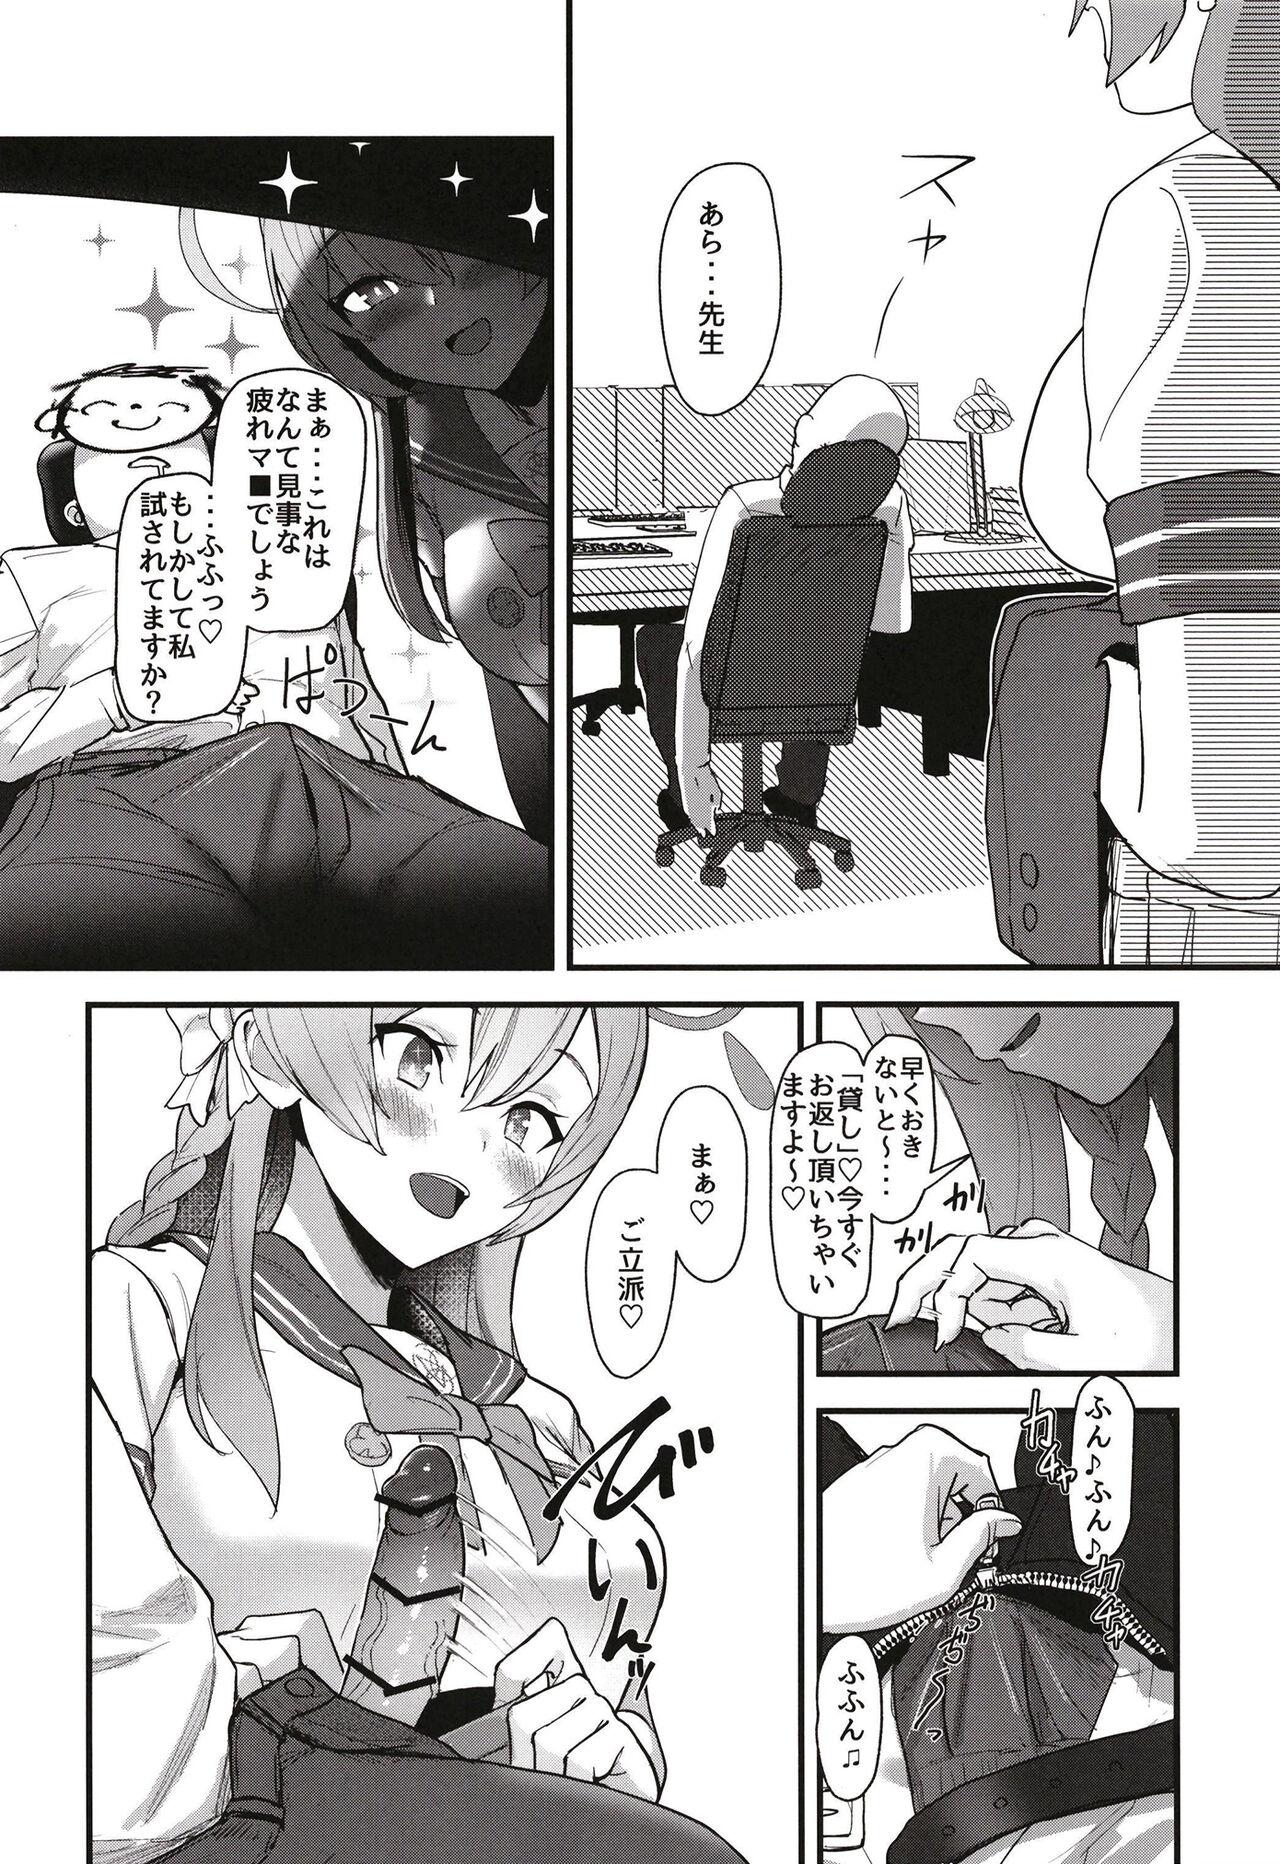 Sub Aiyoku wa muyoku ni ni tari - Blue archive Cumming - Page 10